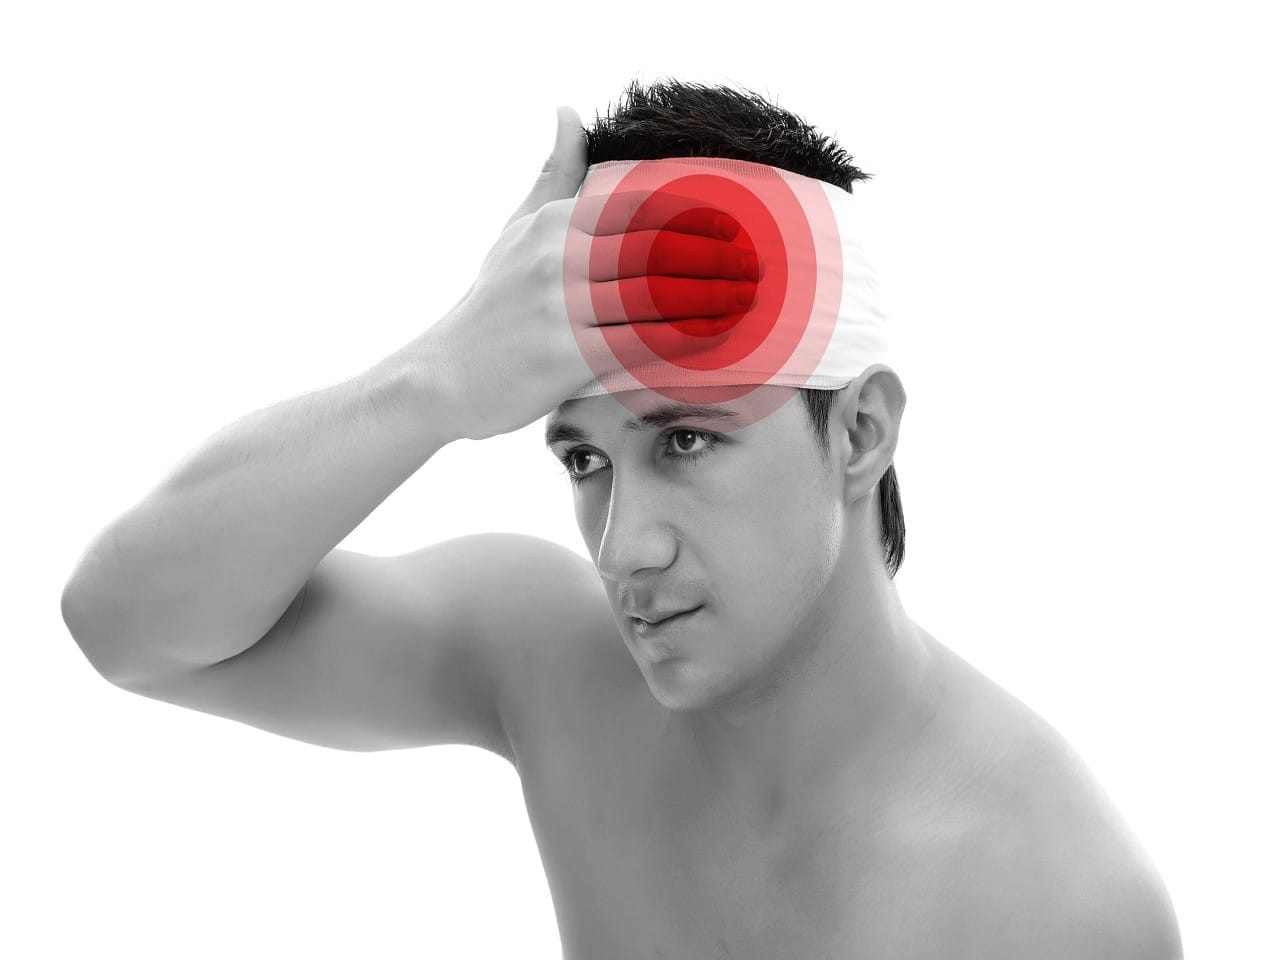 Baş yada Kafa yaralanmalarında ilkyardım nasıl yapılmalı? | İlkyardım